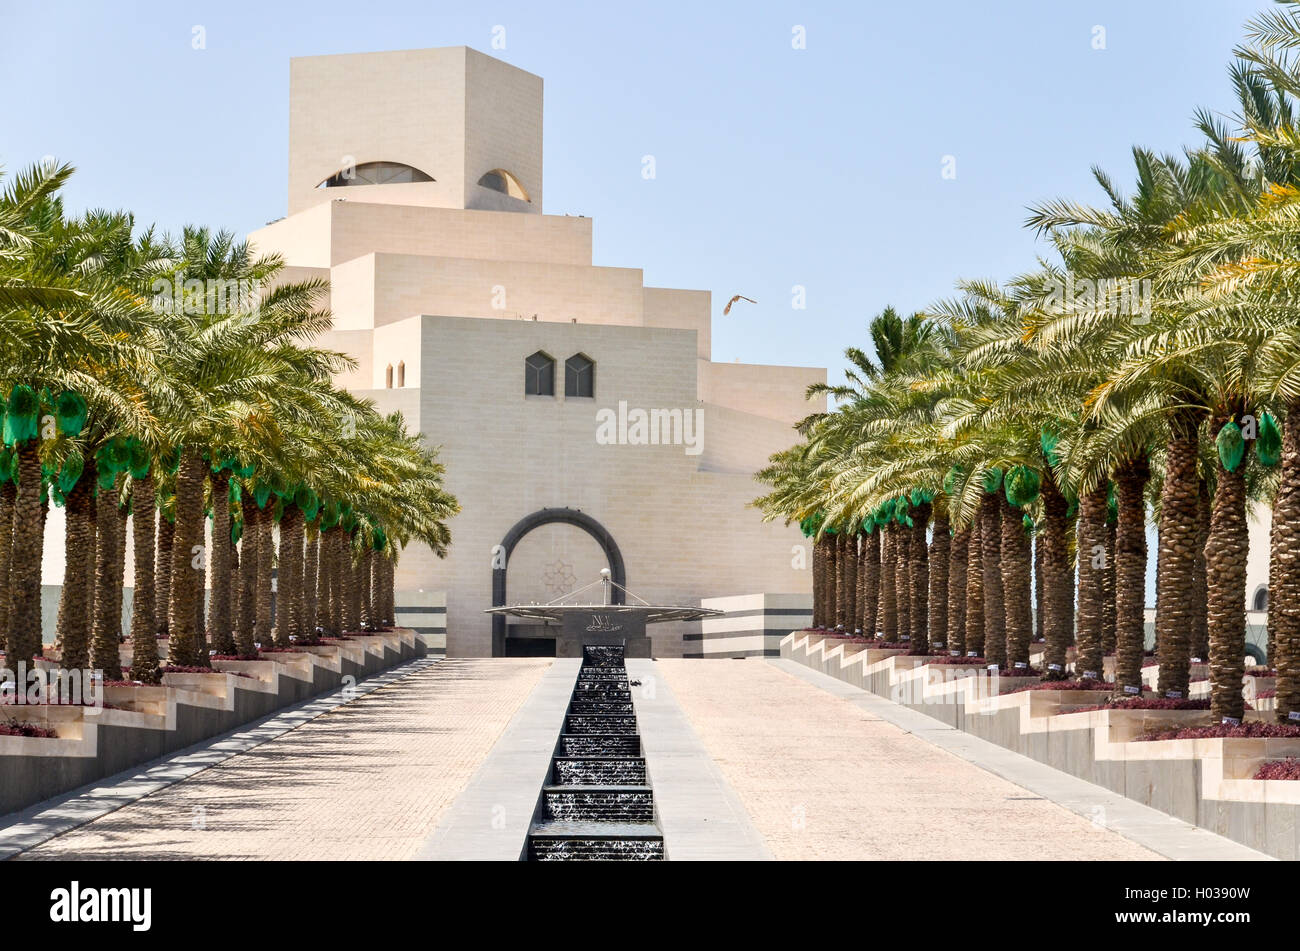 Doha Museum of Islamic Art, Qatar Stock Photo